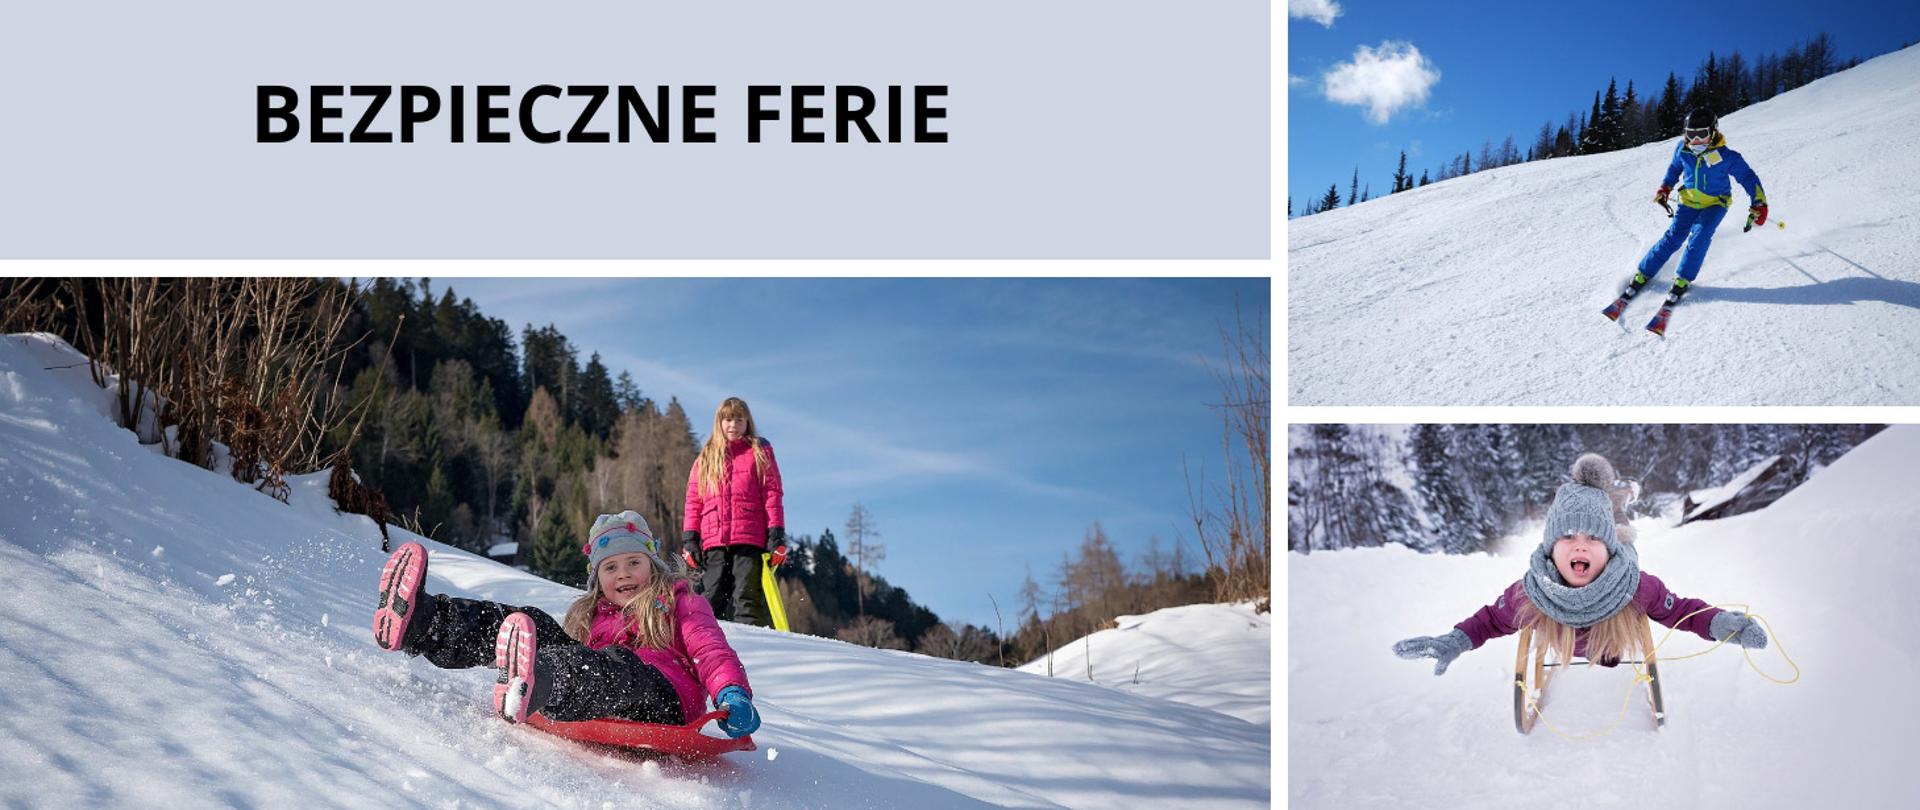 3 zdjęcia przedstawiające dzieci bawiące się na śniegu: zjeżdżające na ślizgaczu, sankach, nartach.